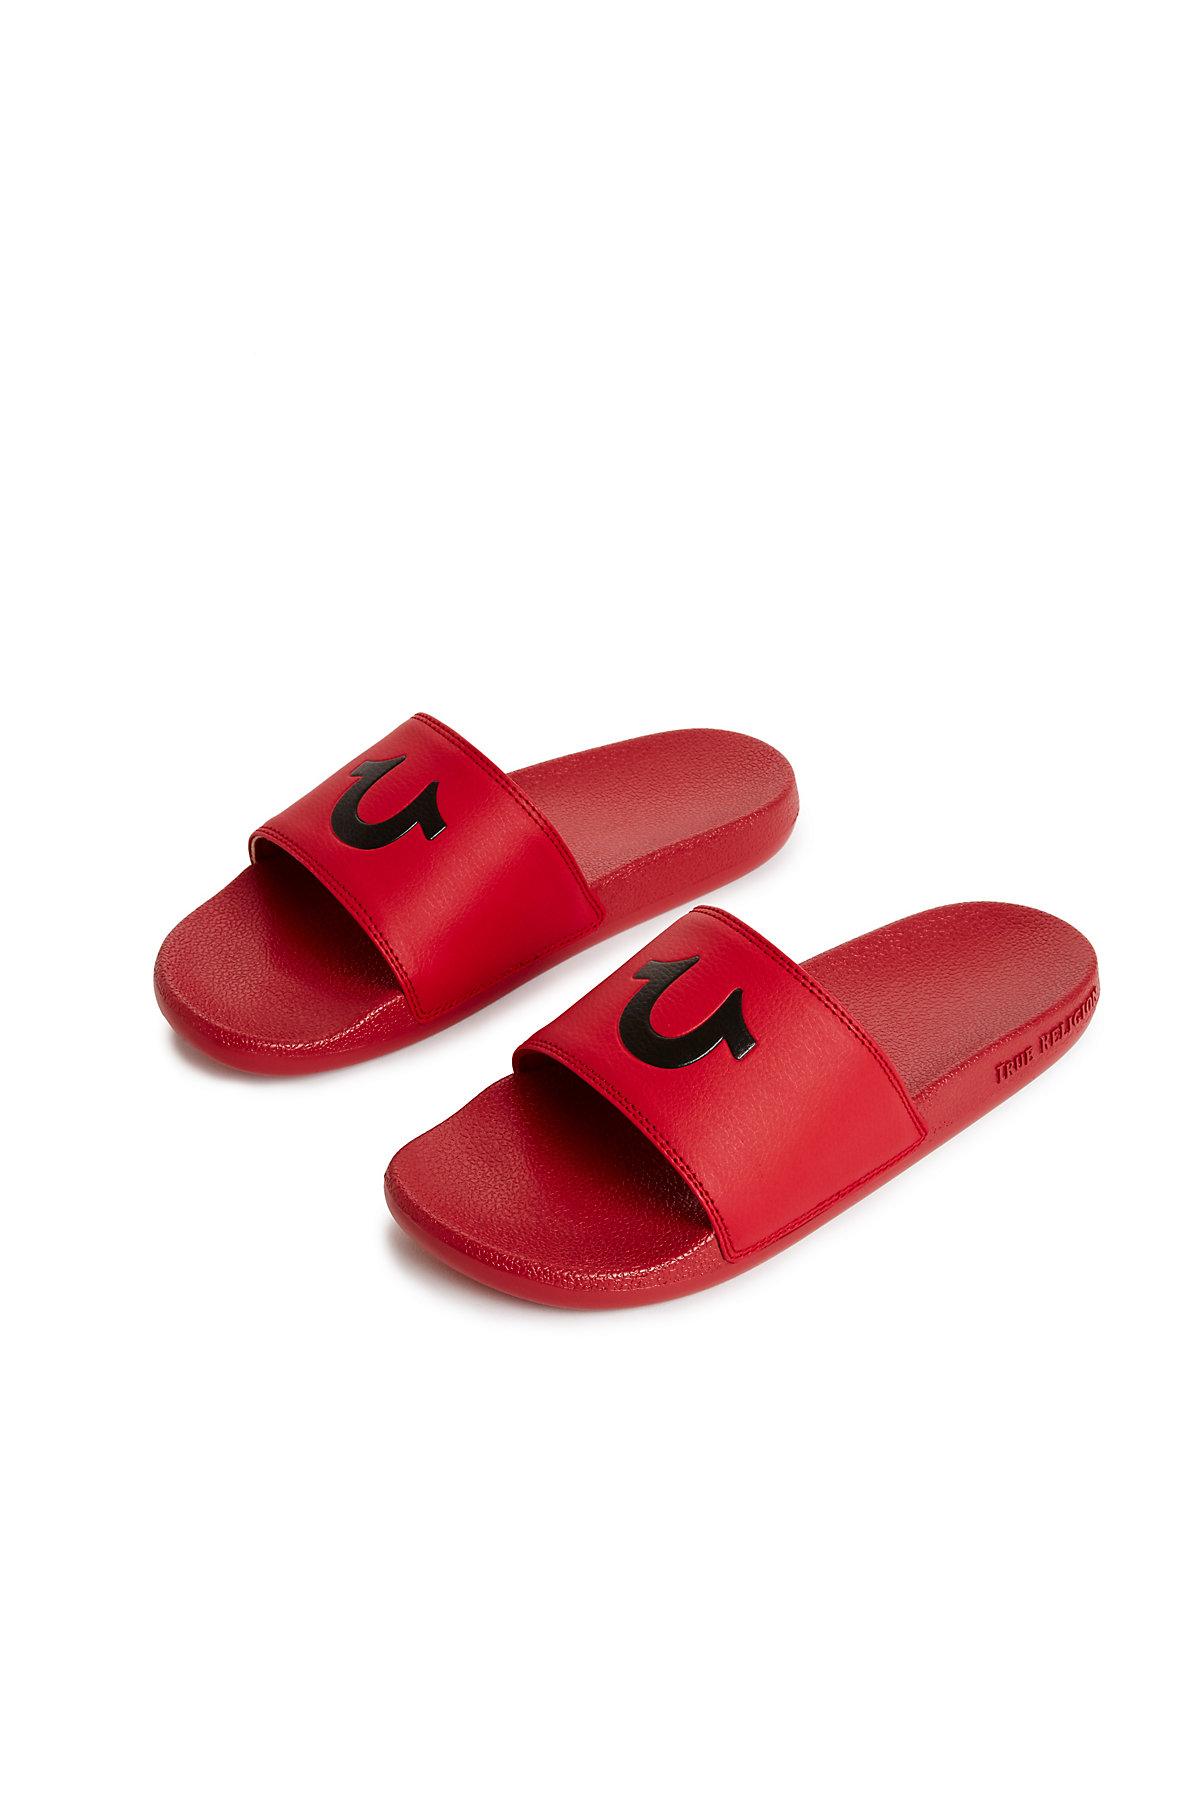 true religion men's slide sandals